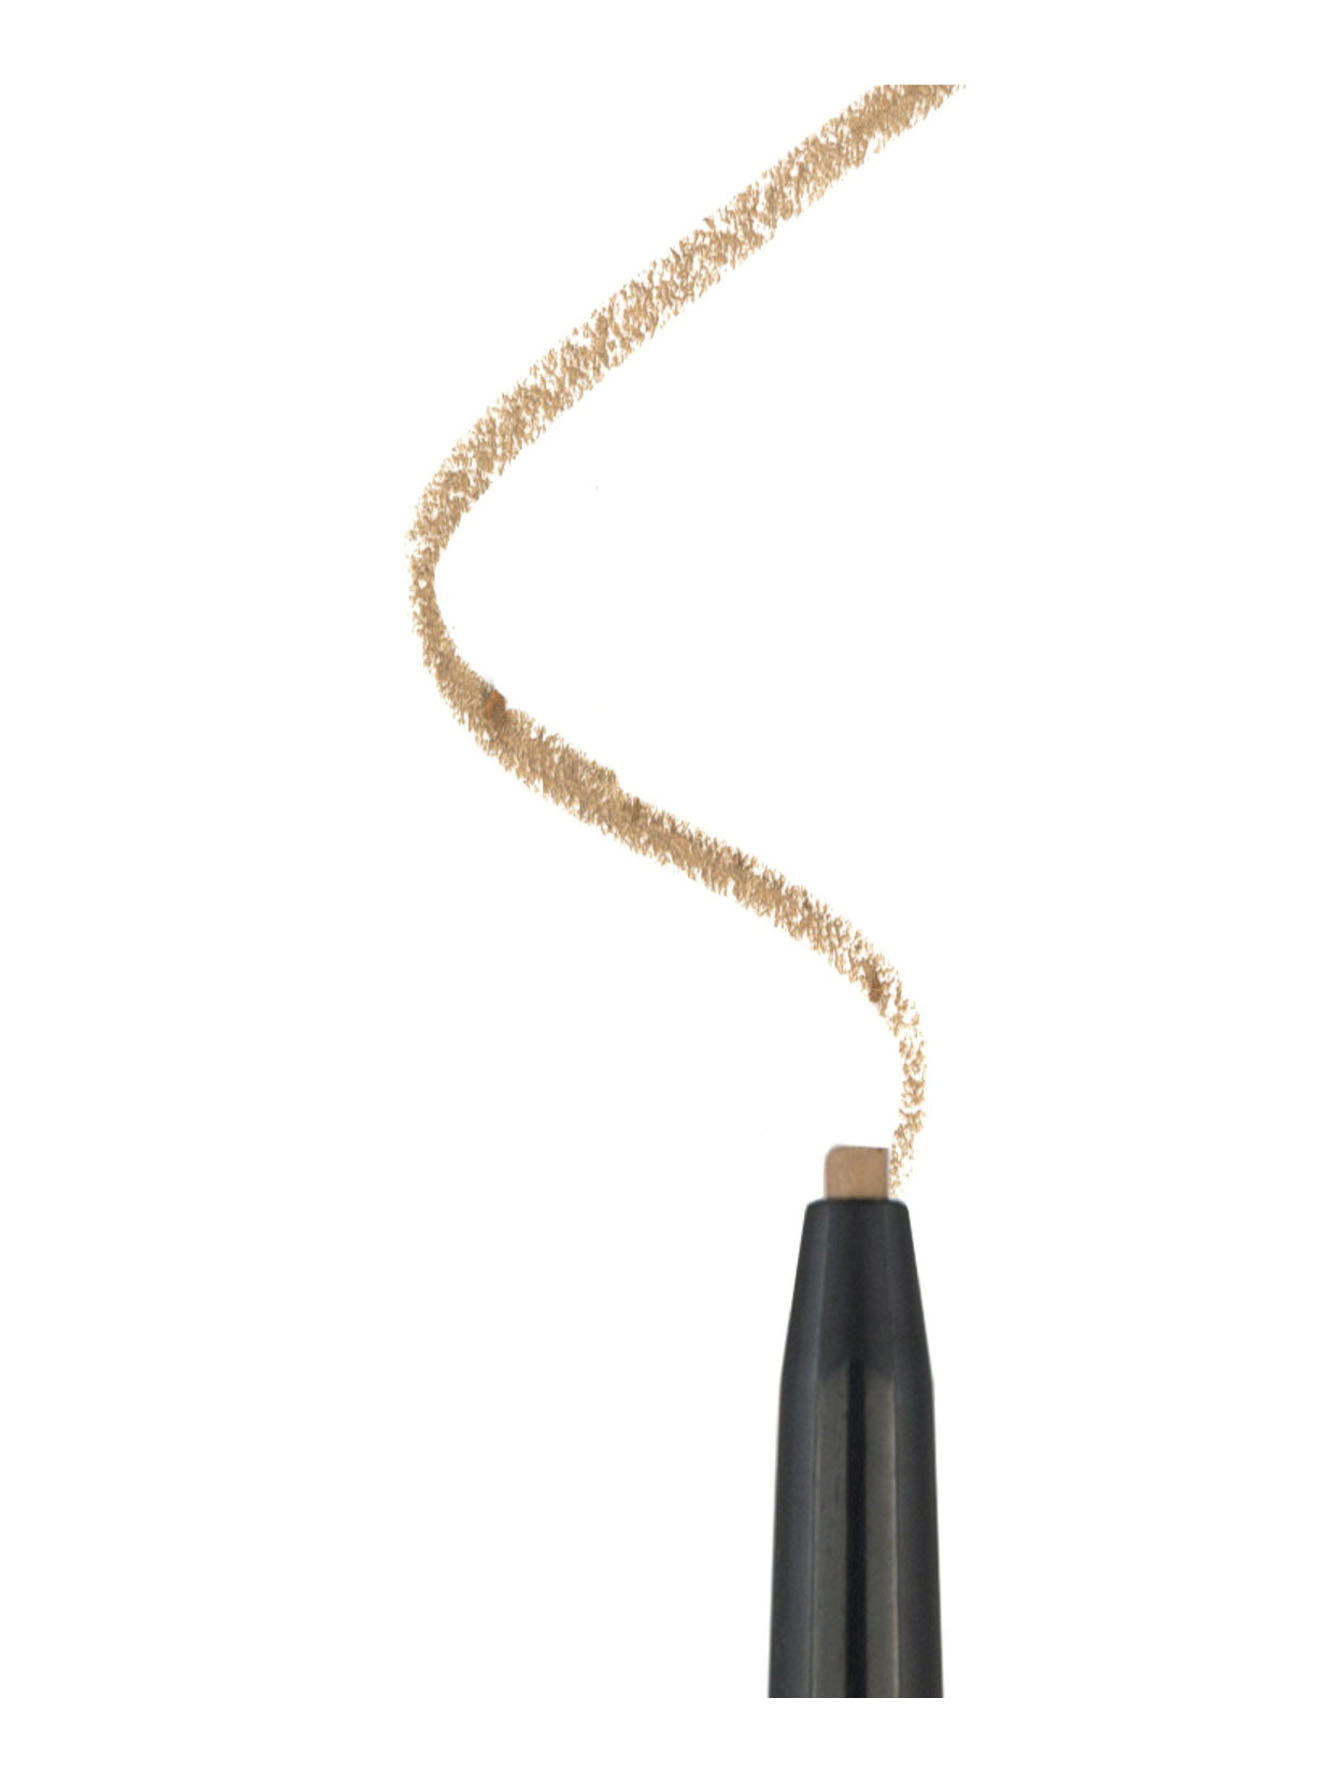 Ультратонкий водостойкий карандаш для бровей Brows on Point, светло-коричневый - Обтравка1